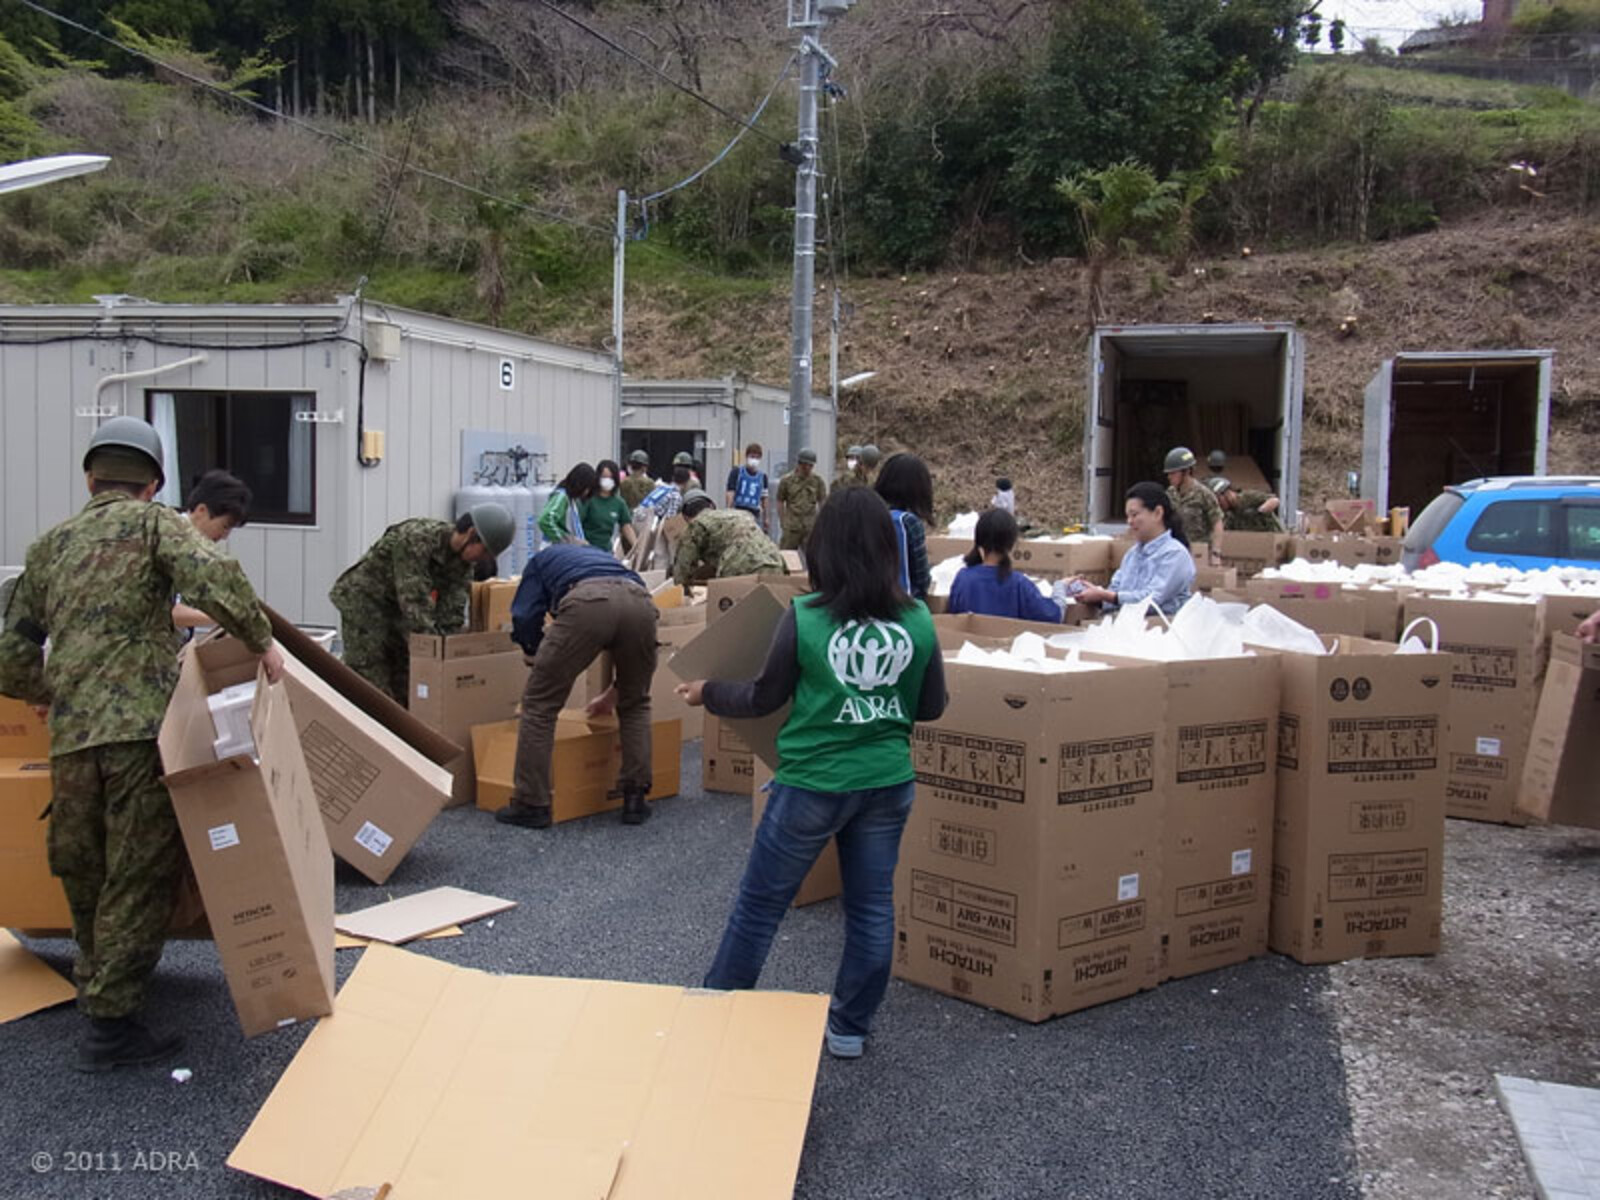 Noch am Tag des Erdbebens ist ADRA Japan im Krisengebiet aktiv und leistet Nothilfe. Ein Notlager für 150 Menschen wird eingerichtet und erste Hilfsgüter wie Plastikplanen und Nahrungsmittel werden an die Menschen verteilt. ADRA konzentriert seine Hilfe v